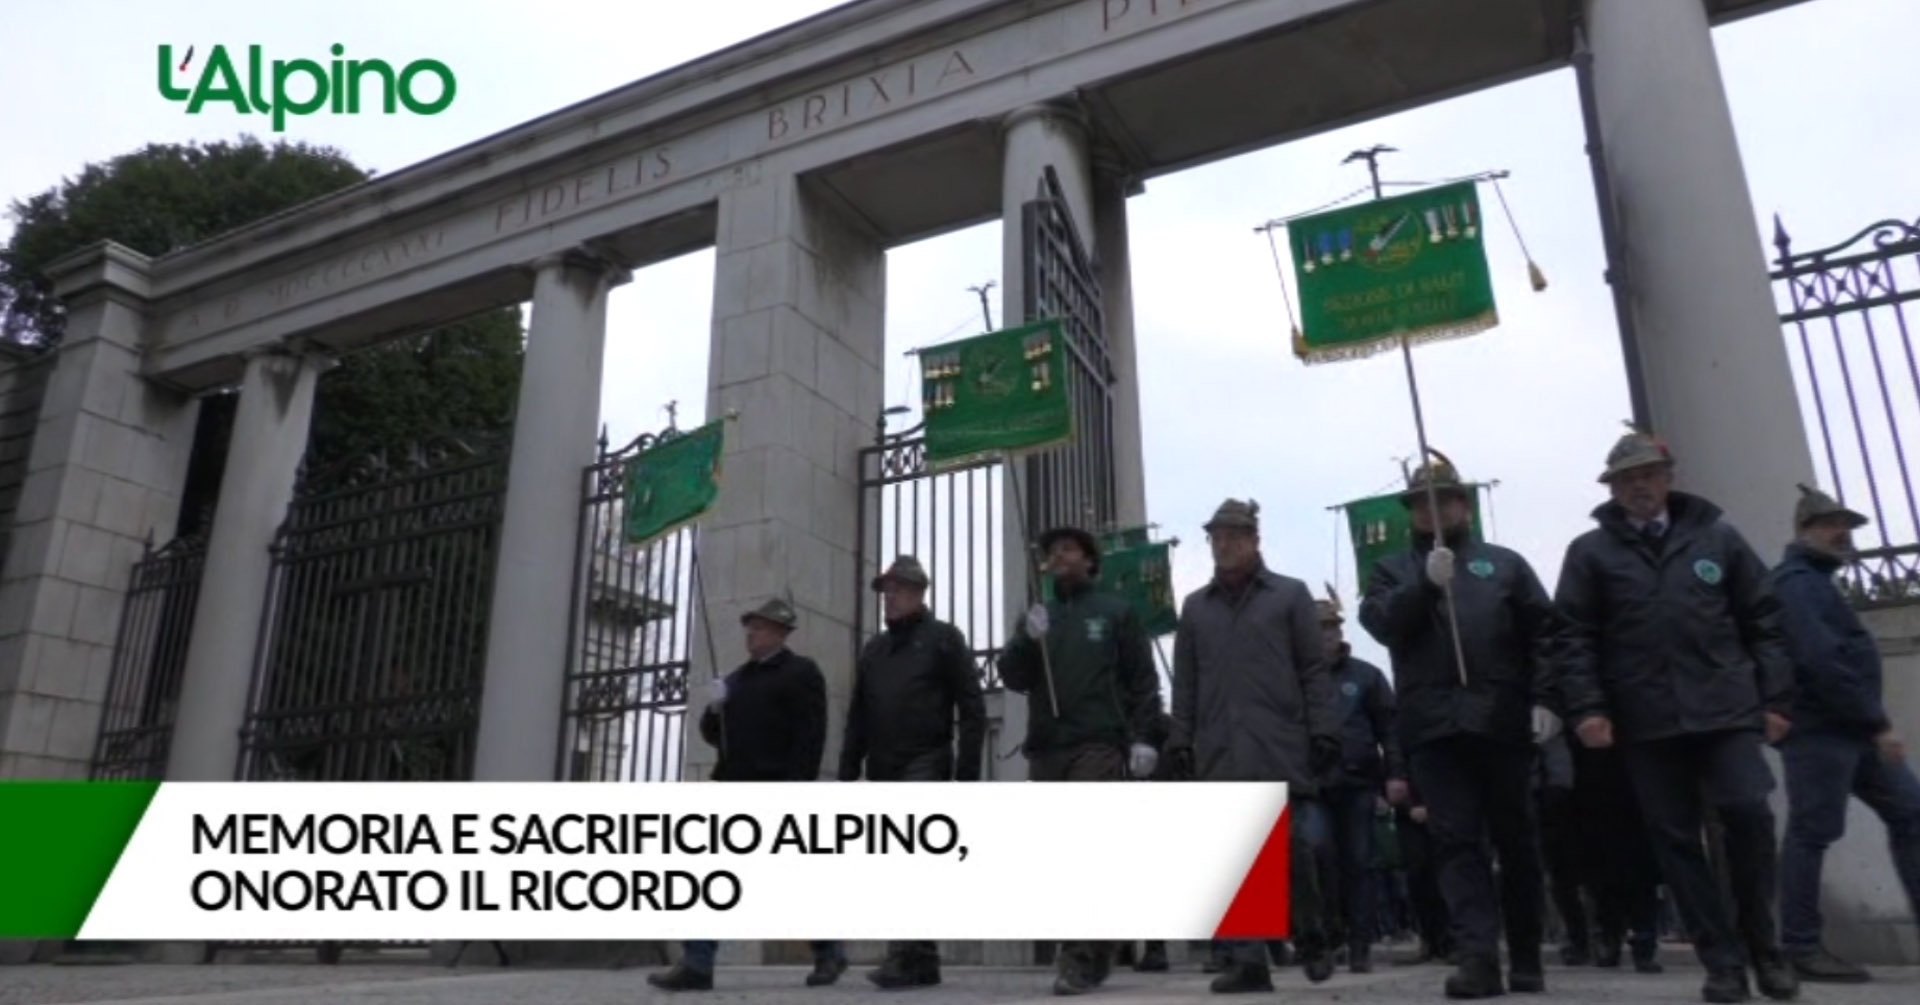 L'Alpino - Memoria e sacrificio alpino, onorato il ricordo a Brescia